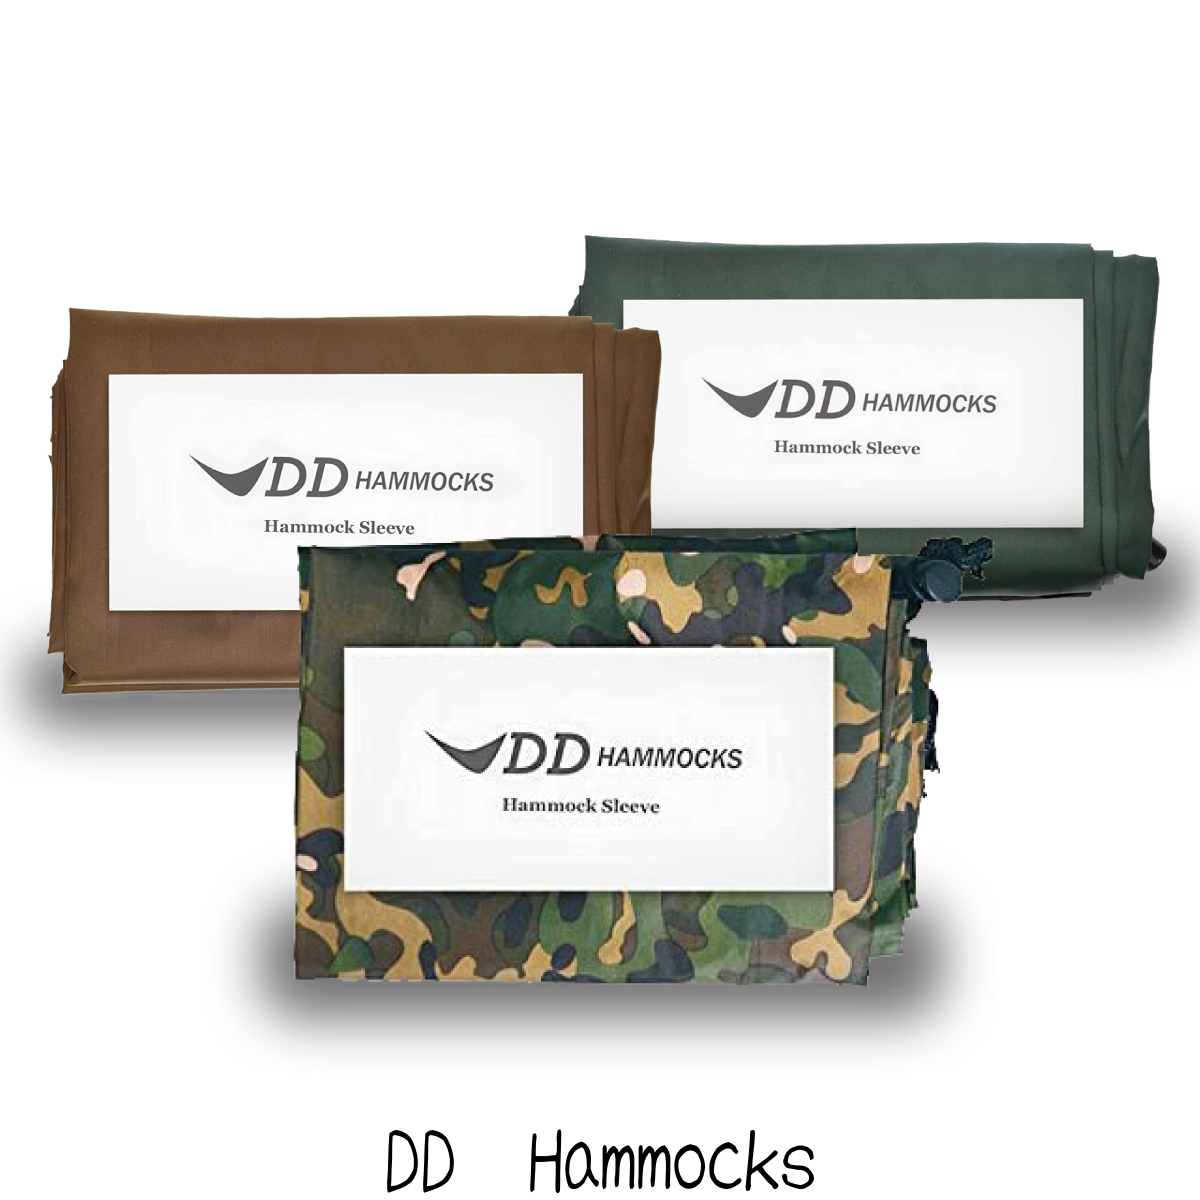 ハンモック収納を簡単にする DD Hammock 人気商品 Sleeve 激安価格と即納で通信販売 ハンモック用アクセサリー メーカー直輸入品 ハンモックスリーブ